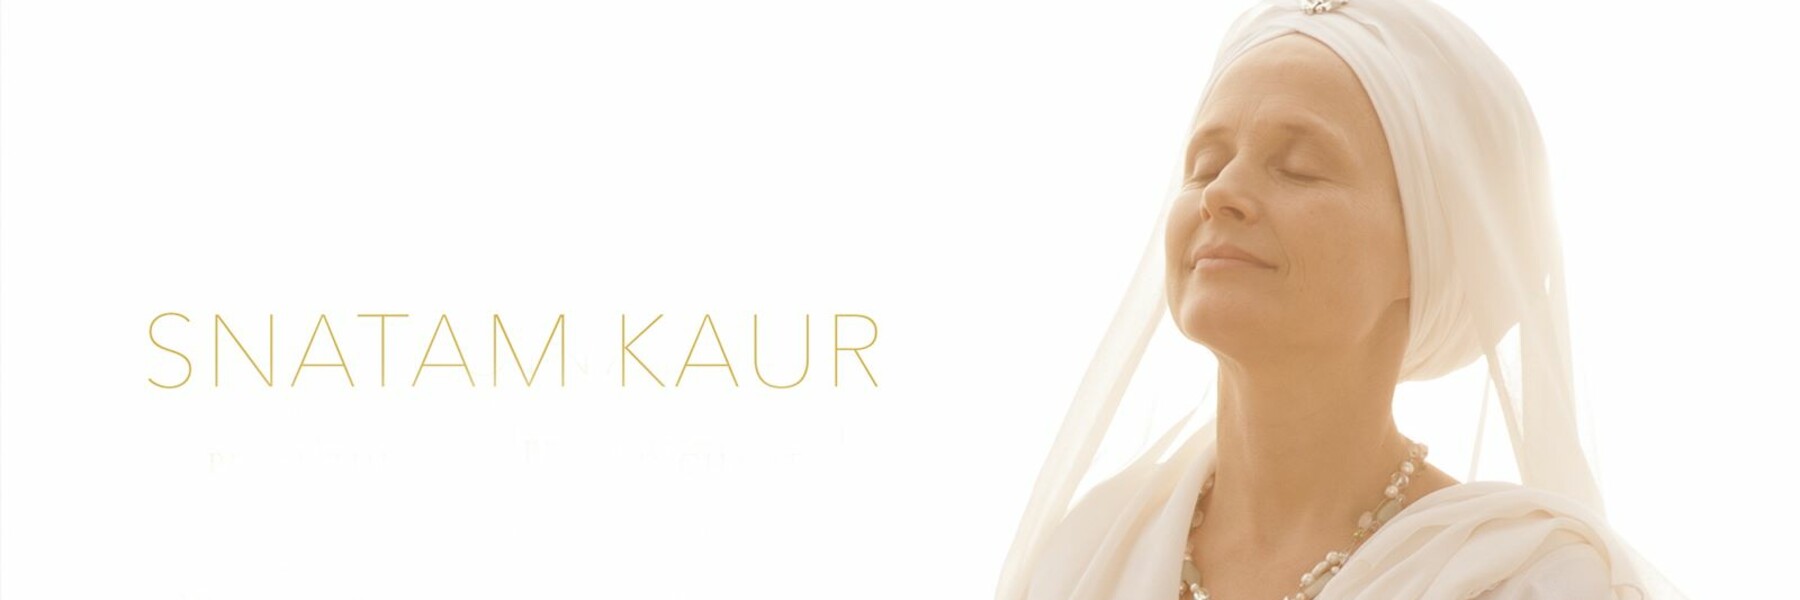 Snatam Kaur am 11.3.21 in The Hall Zürich